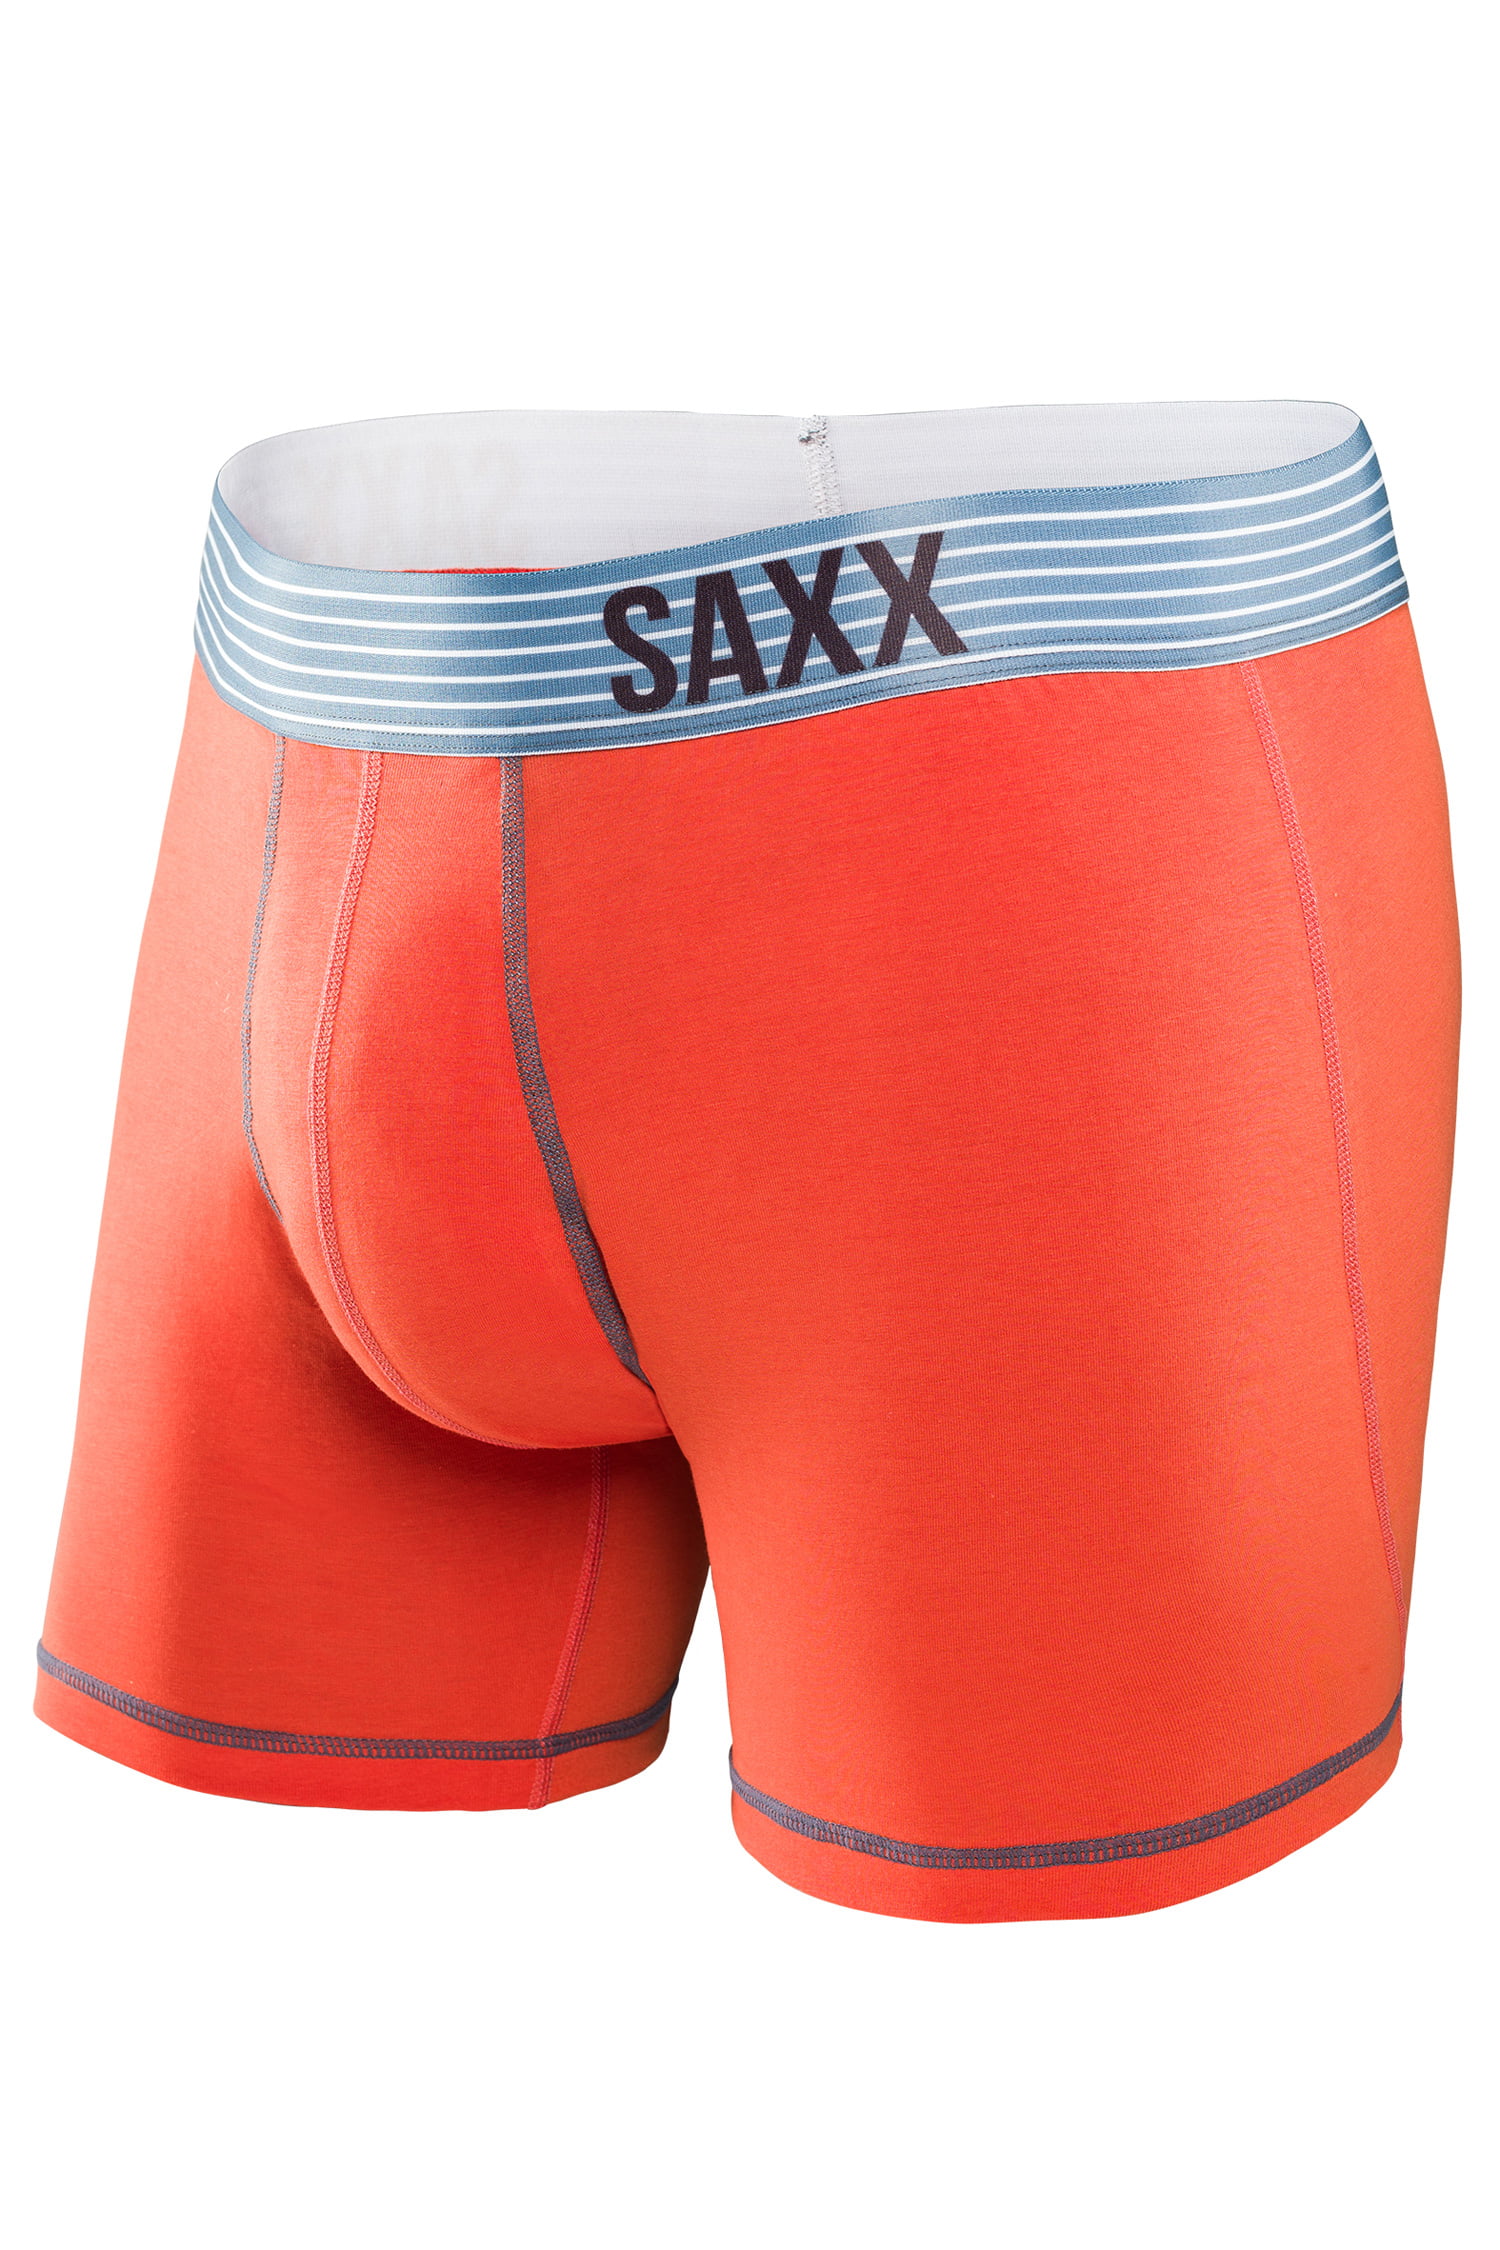 Saxx Underwear Fiesta Boxer Brief SXBB16 - Walmart.com